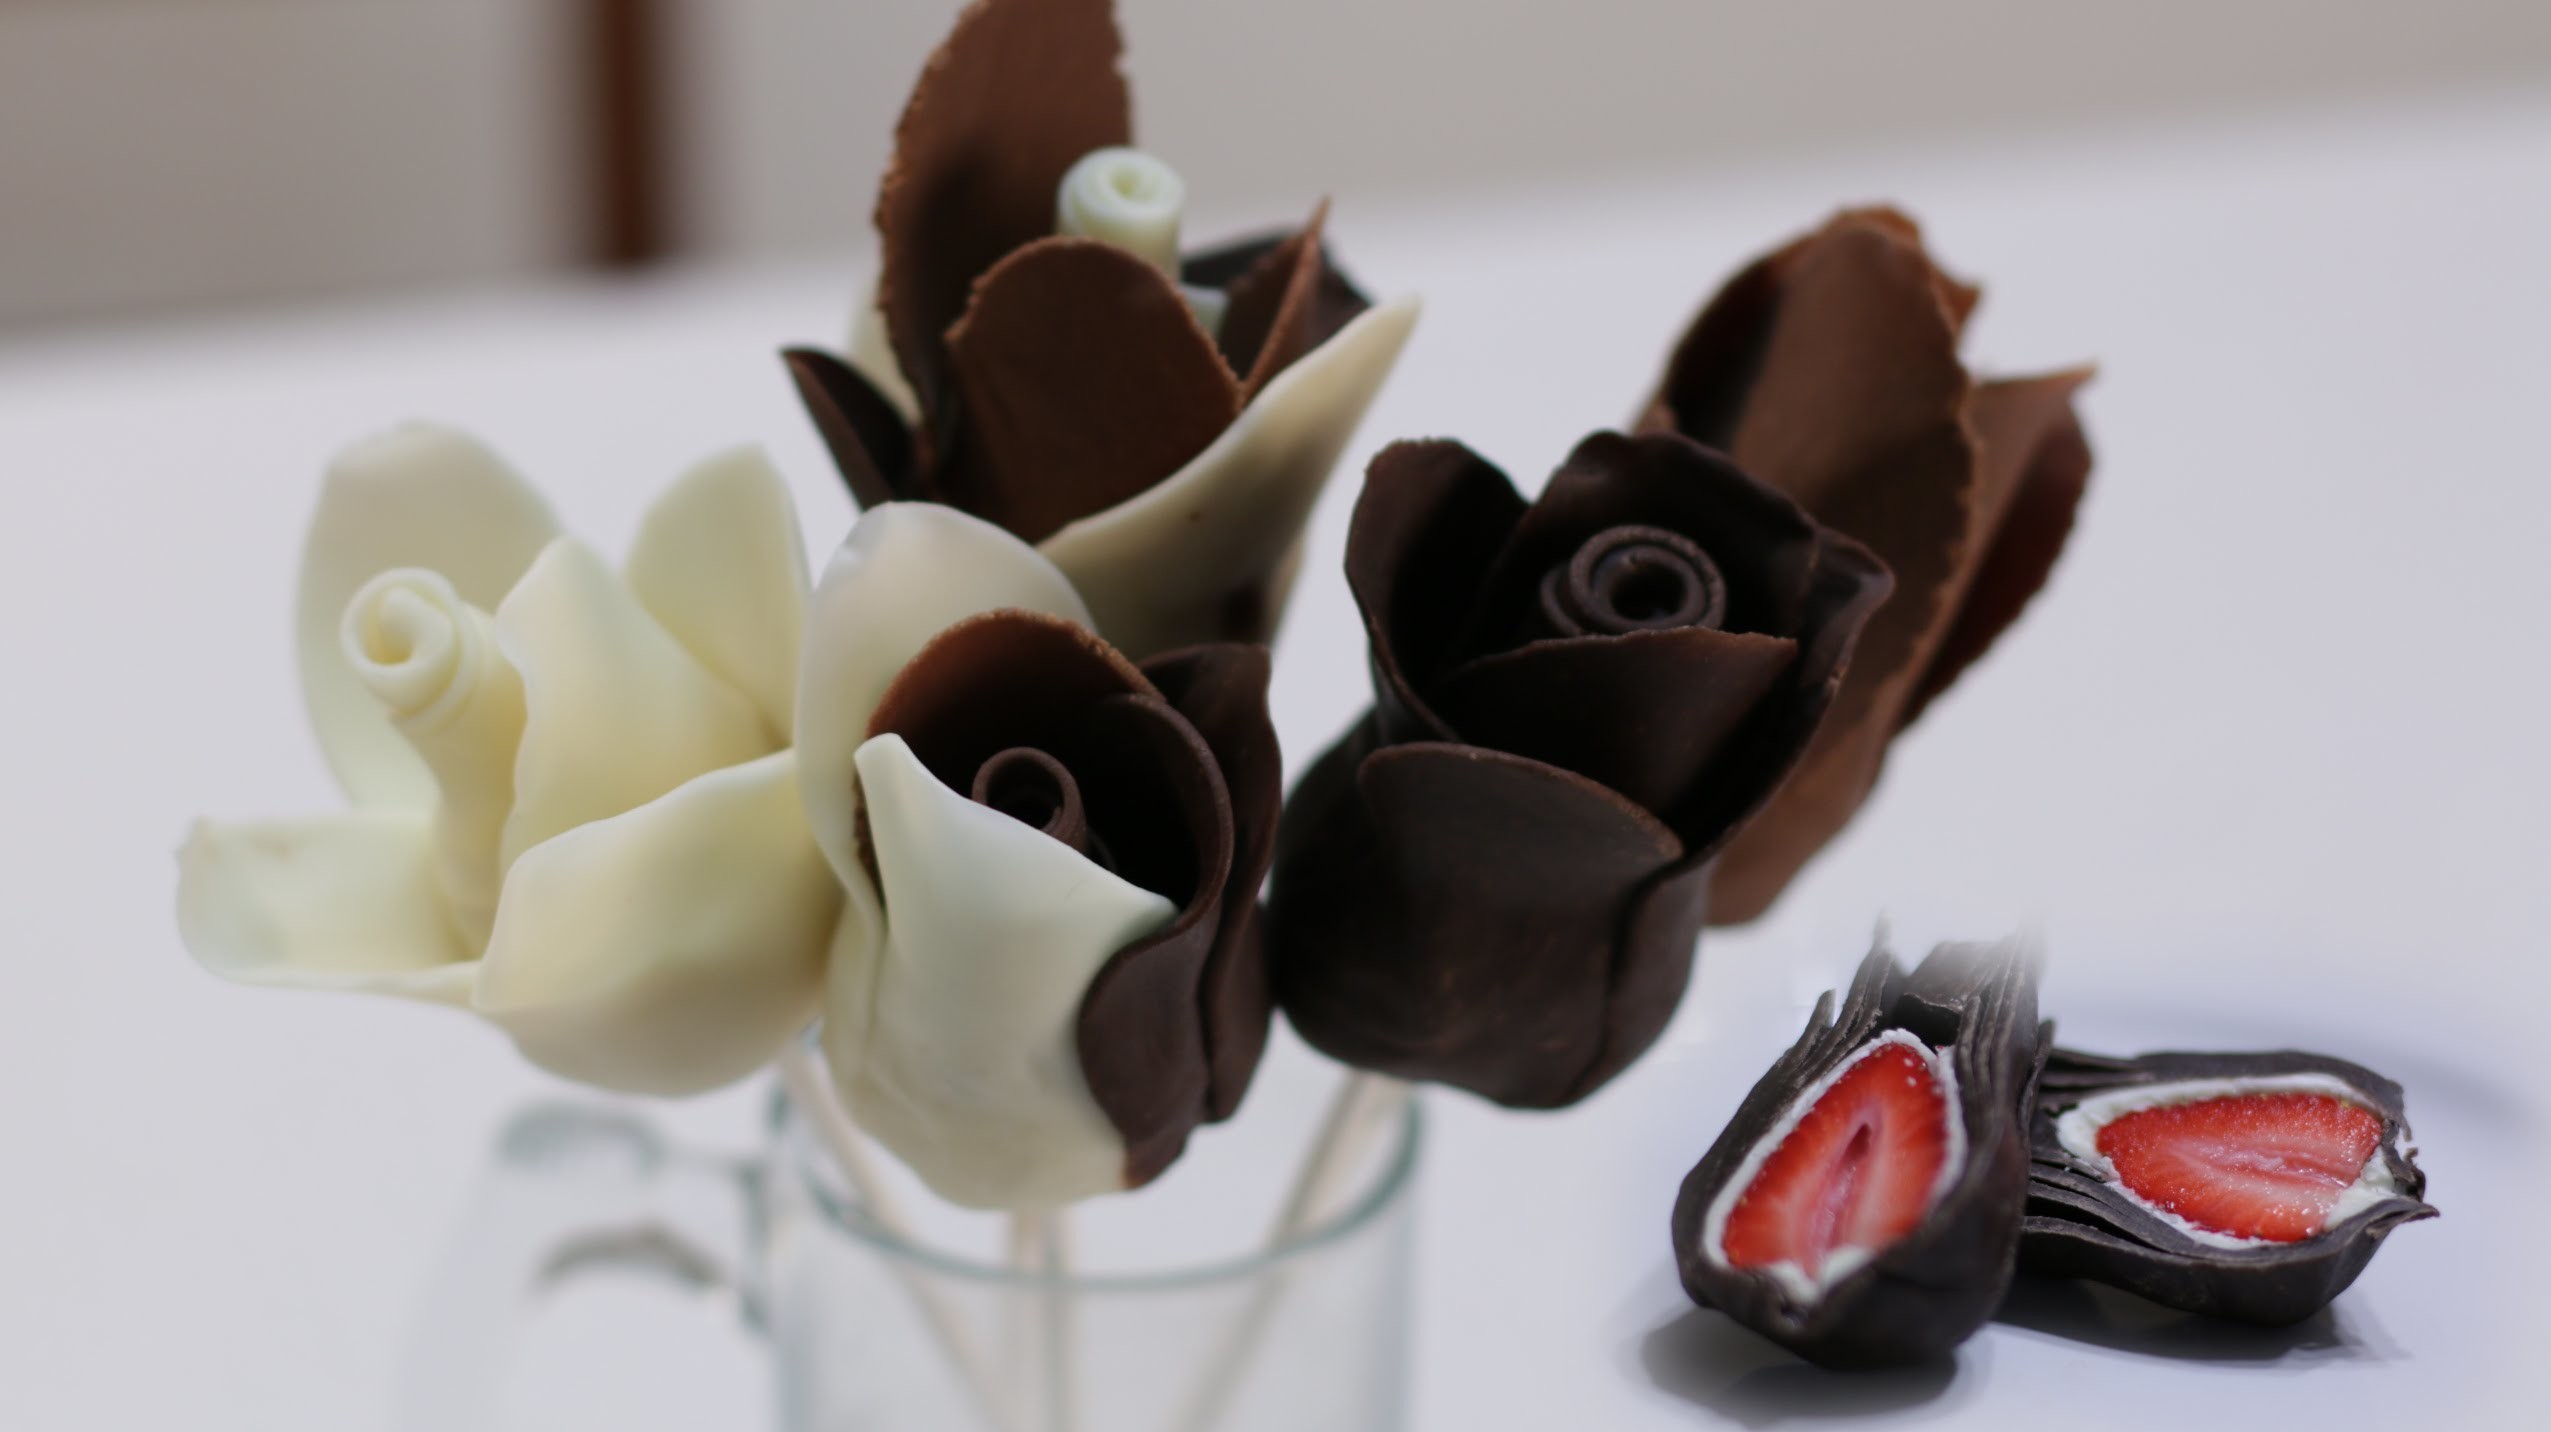 modellierschokolade selber machen bastelideen